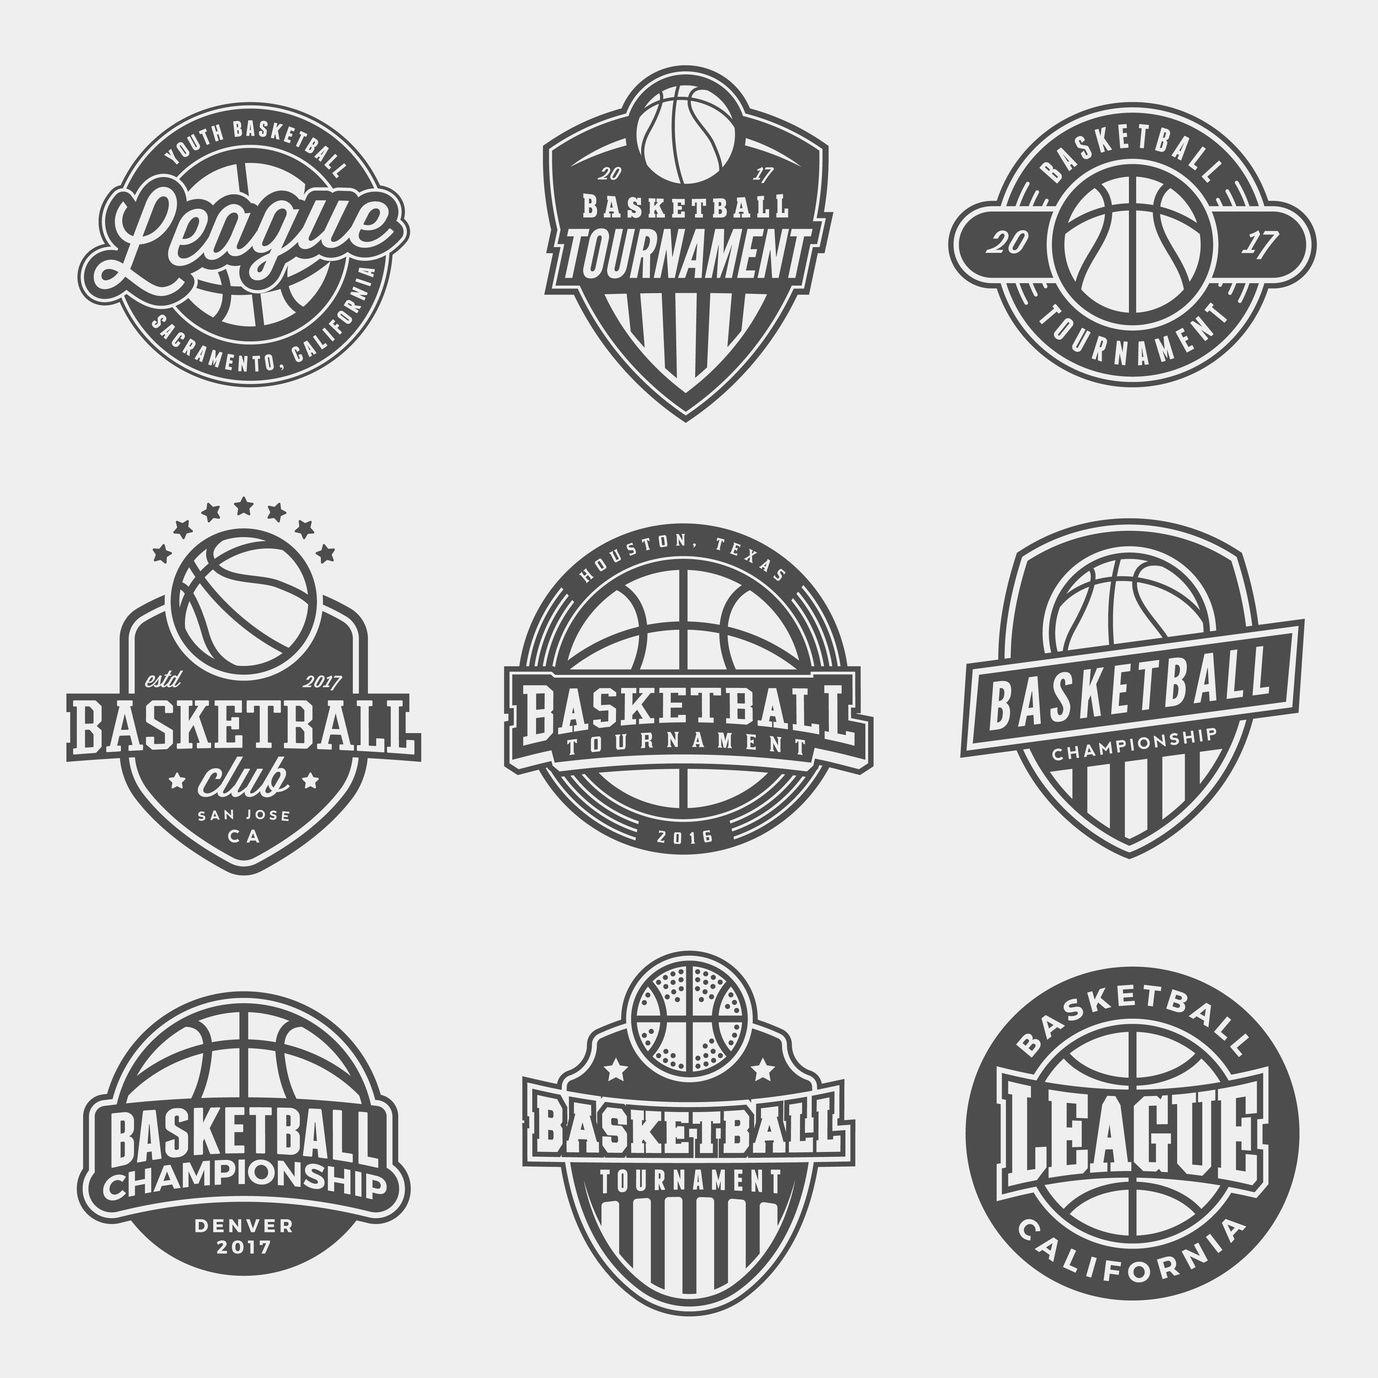 Best Basketball Logo - How to Create a Fun Basketball Logo • Online Logo Maker's Blog